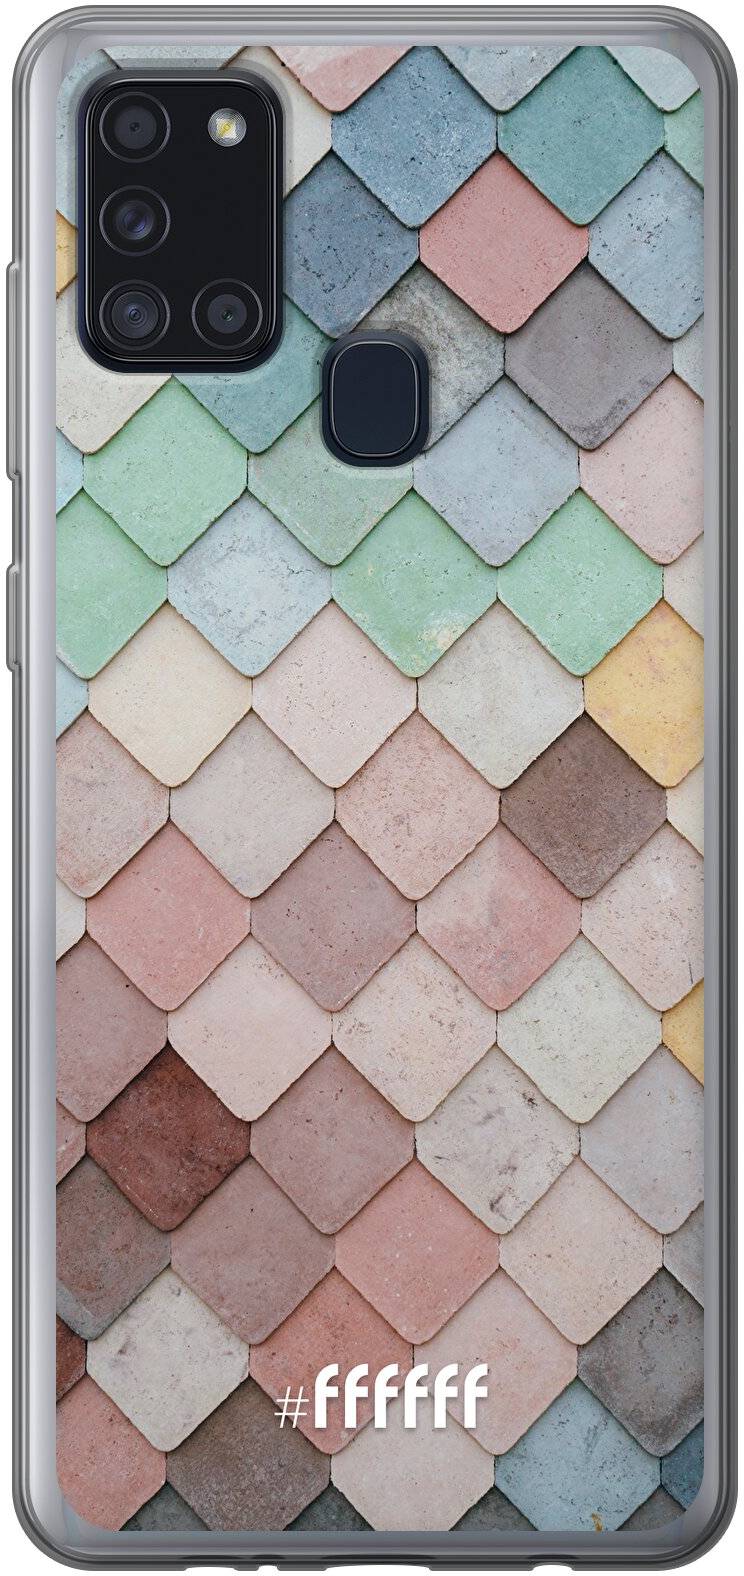 Colour Tiles Galaxy A21s